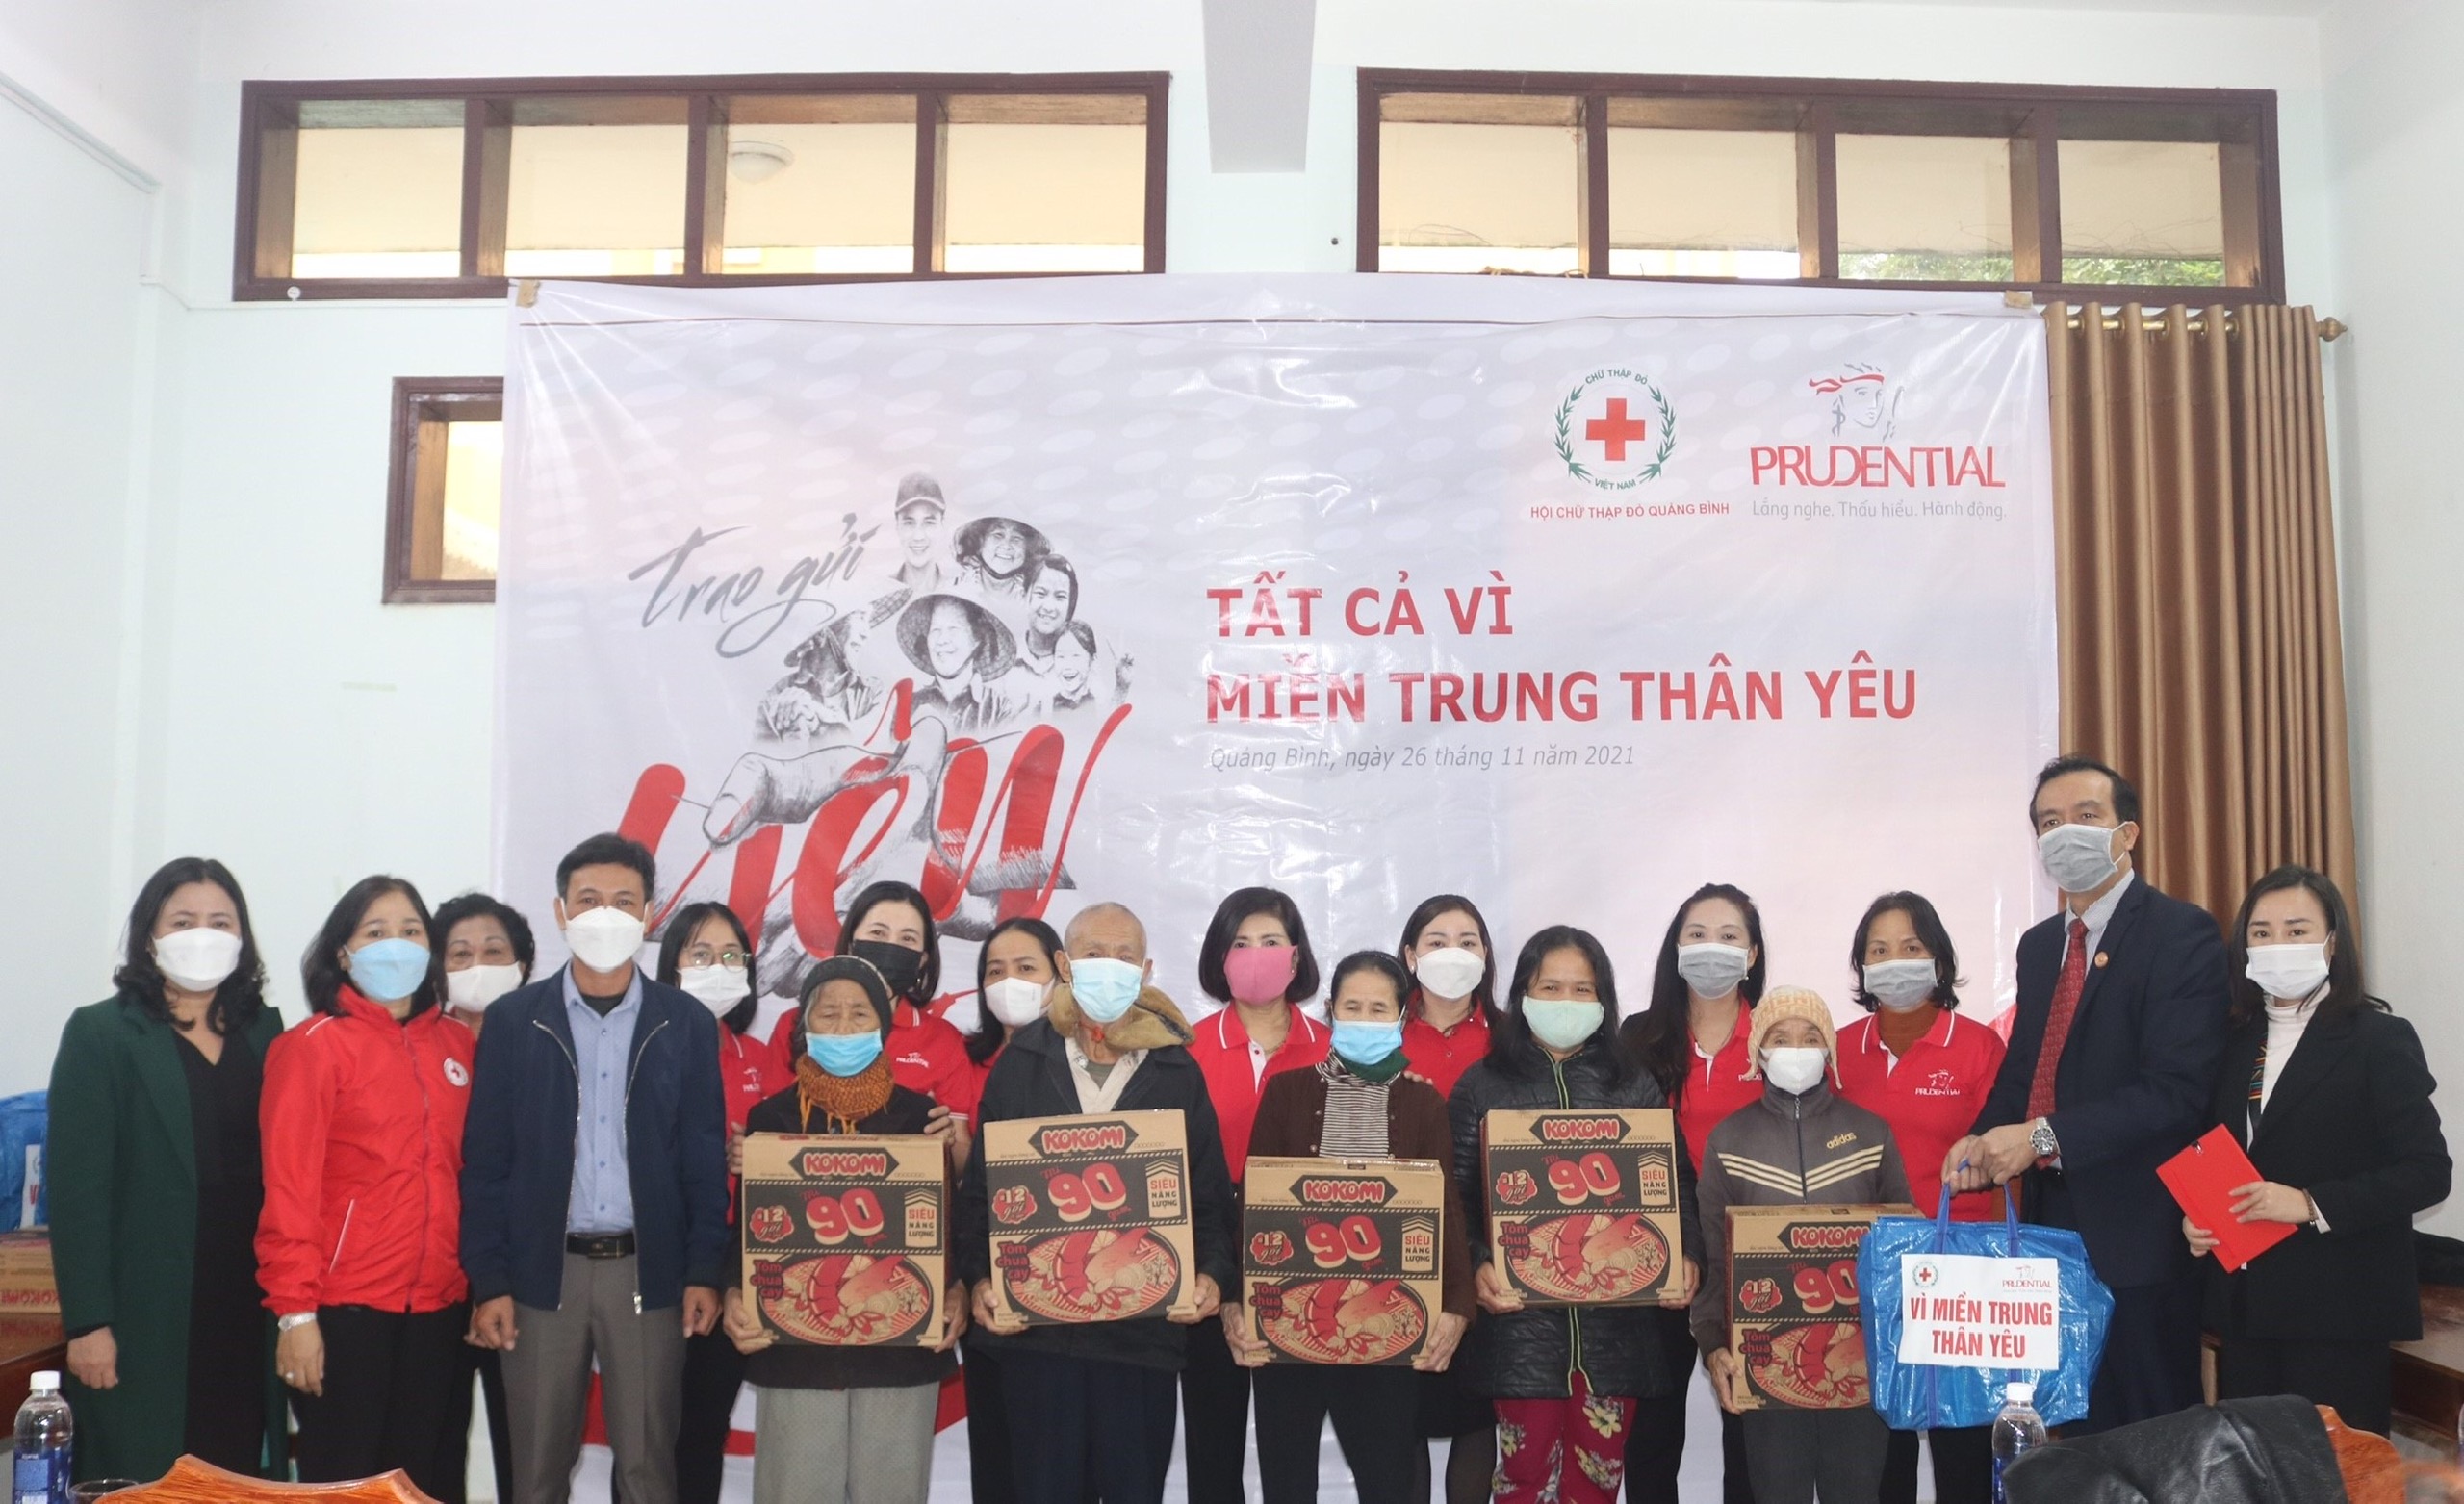 Prudential tặng nhu yếu phẩm cho các hộ gia đình chịu ảnh hưởng nặng nề bởi thiên tai tại Quảng Bình